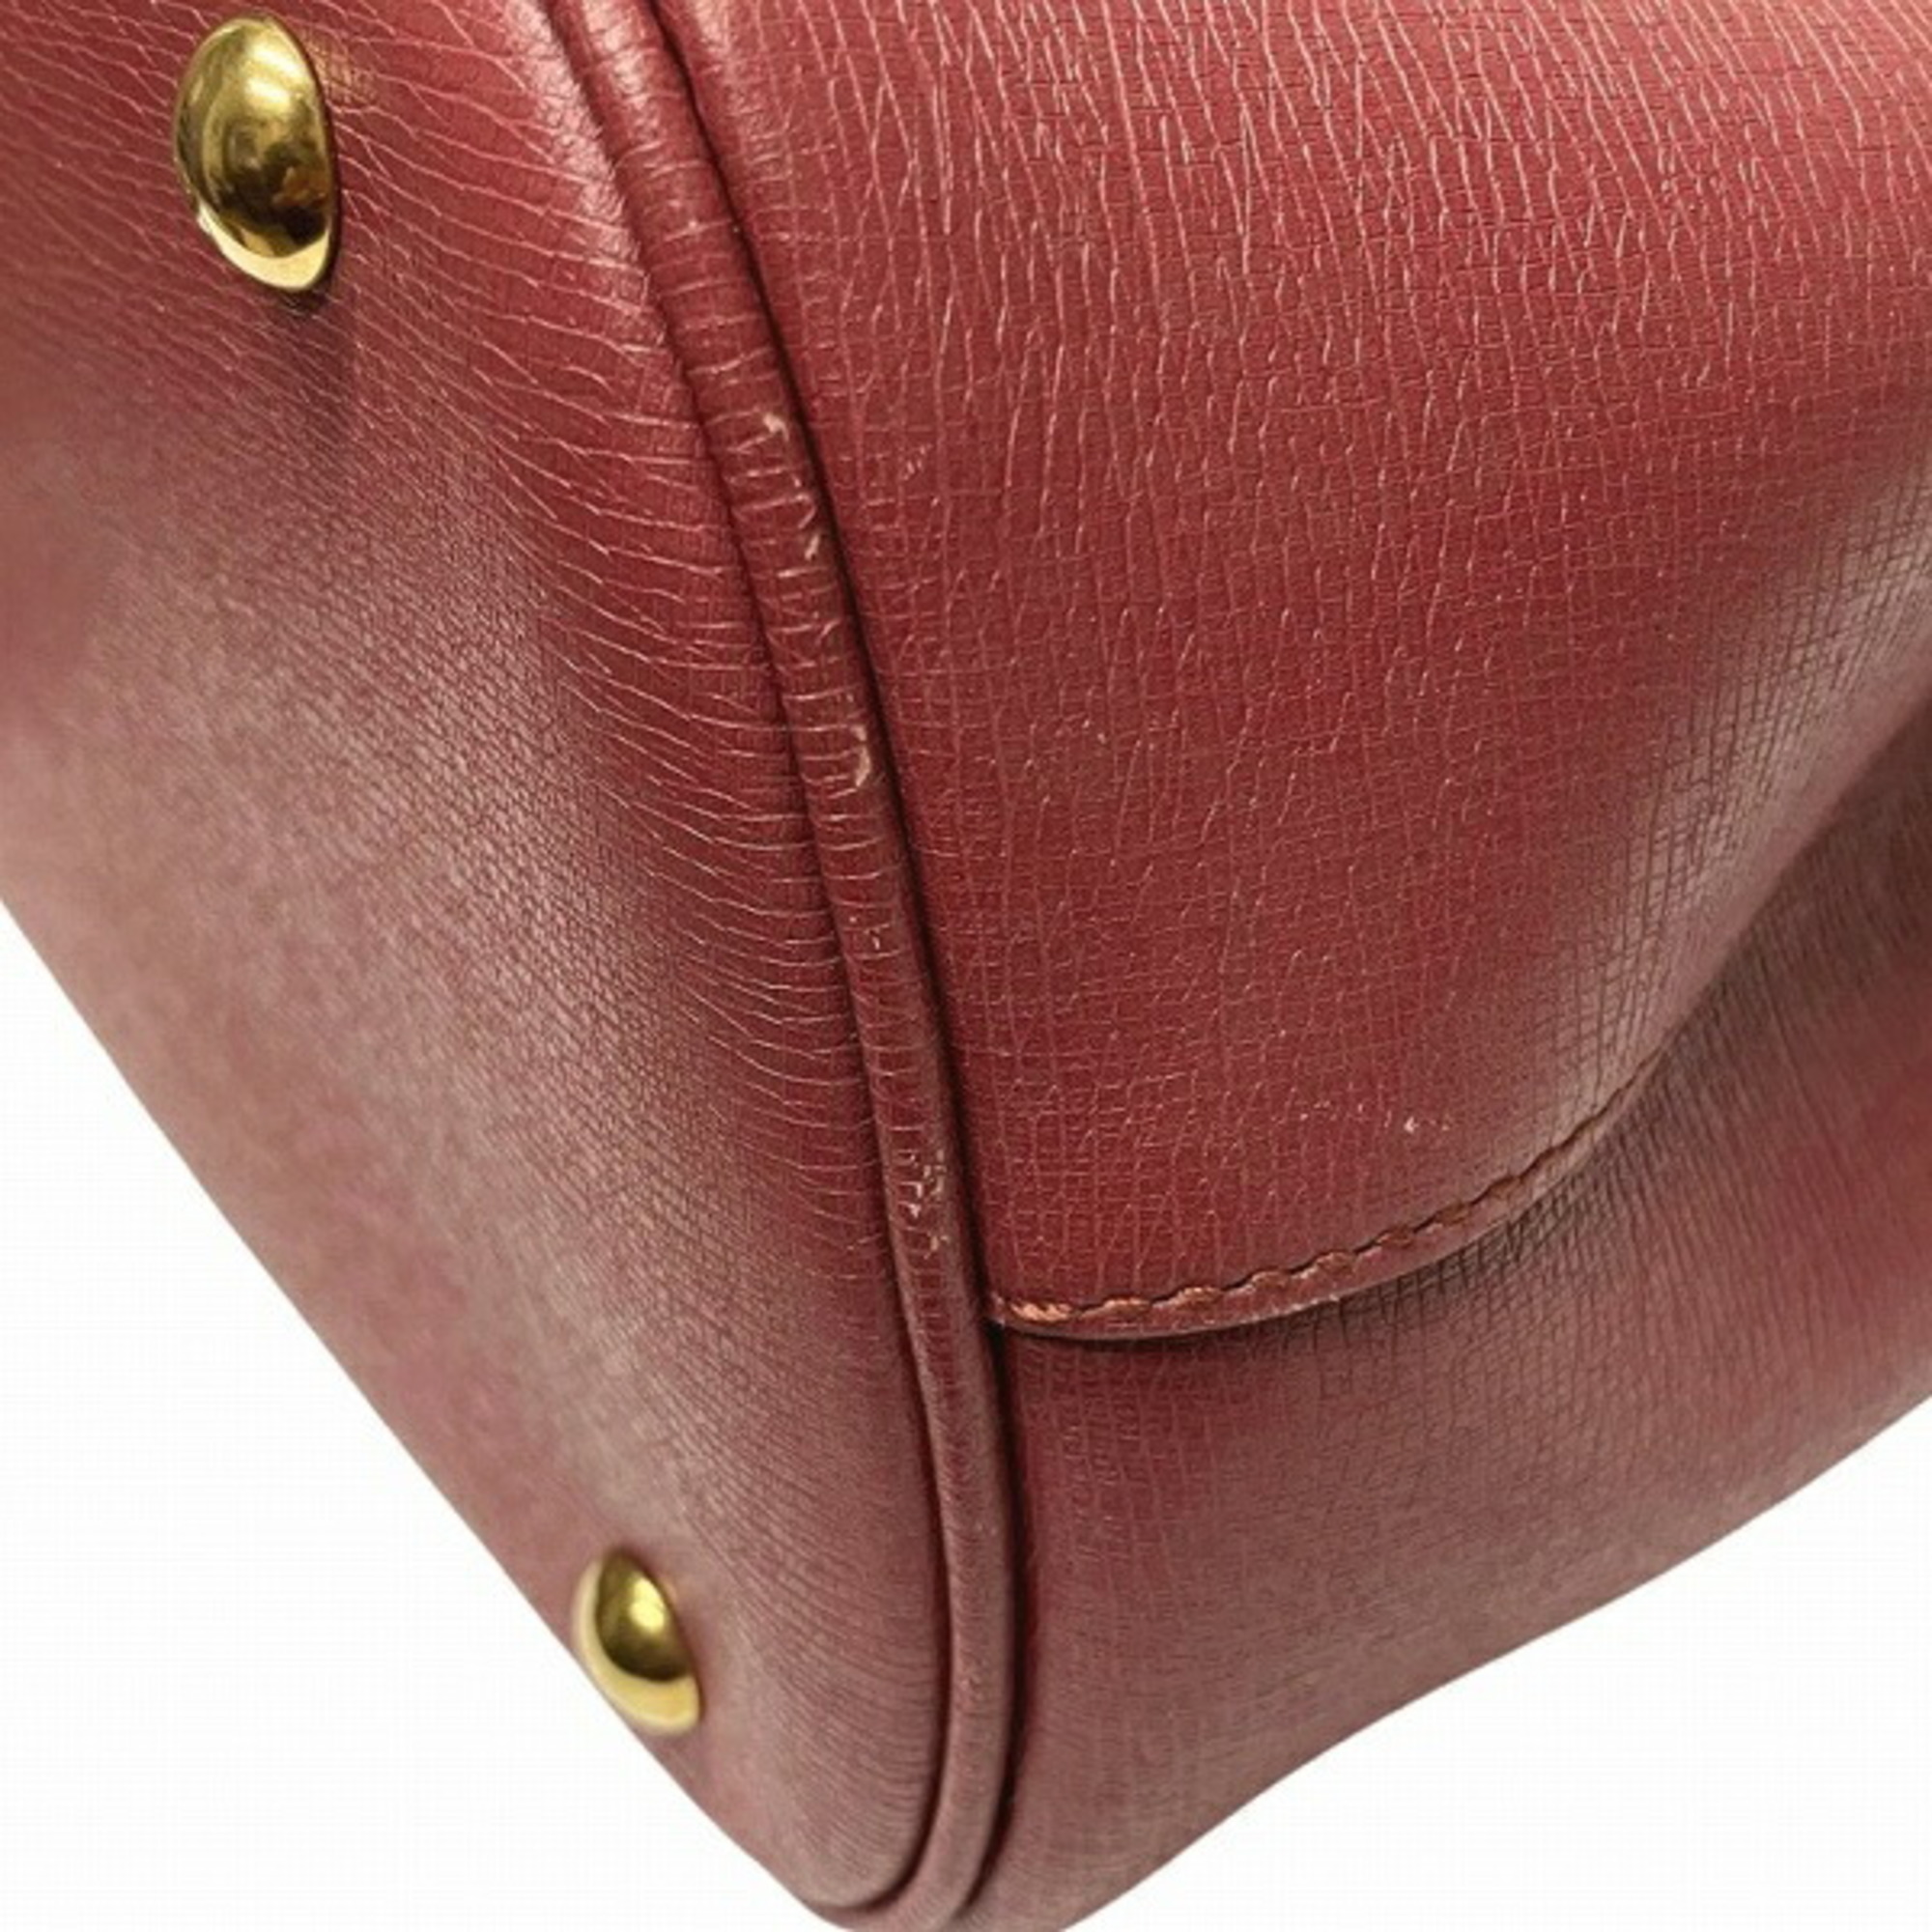 GUCCI Horsebit 319795 2way bag shoulder handbag ladies